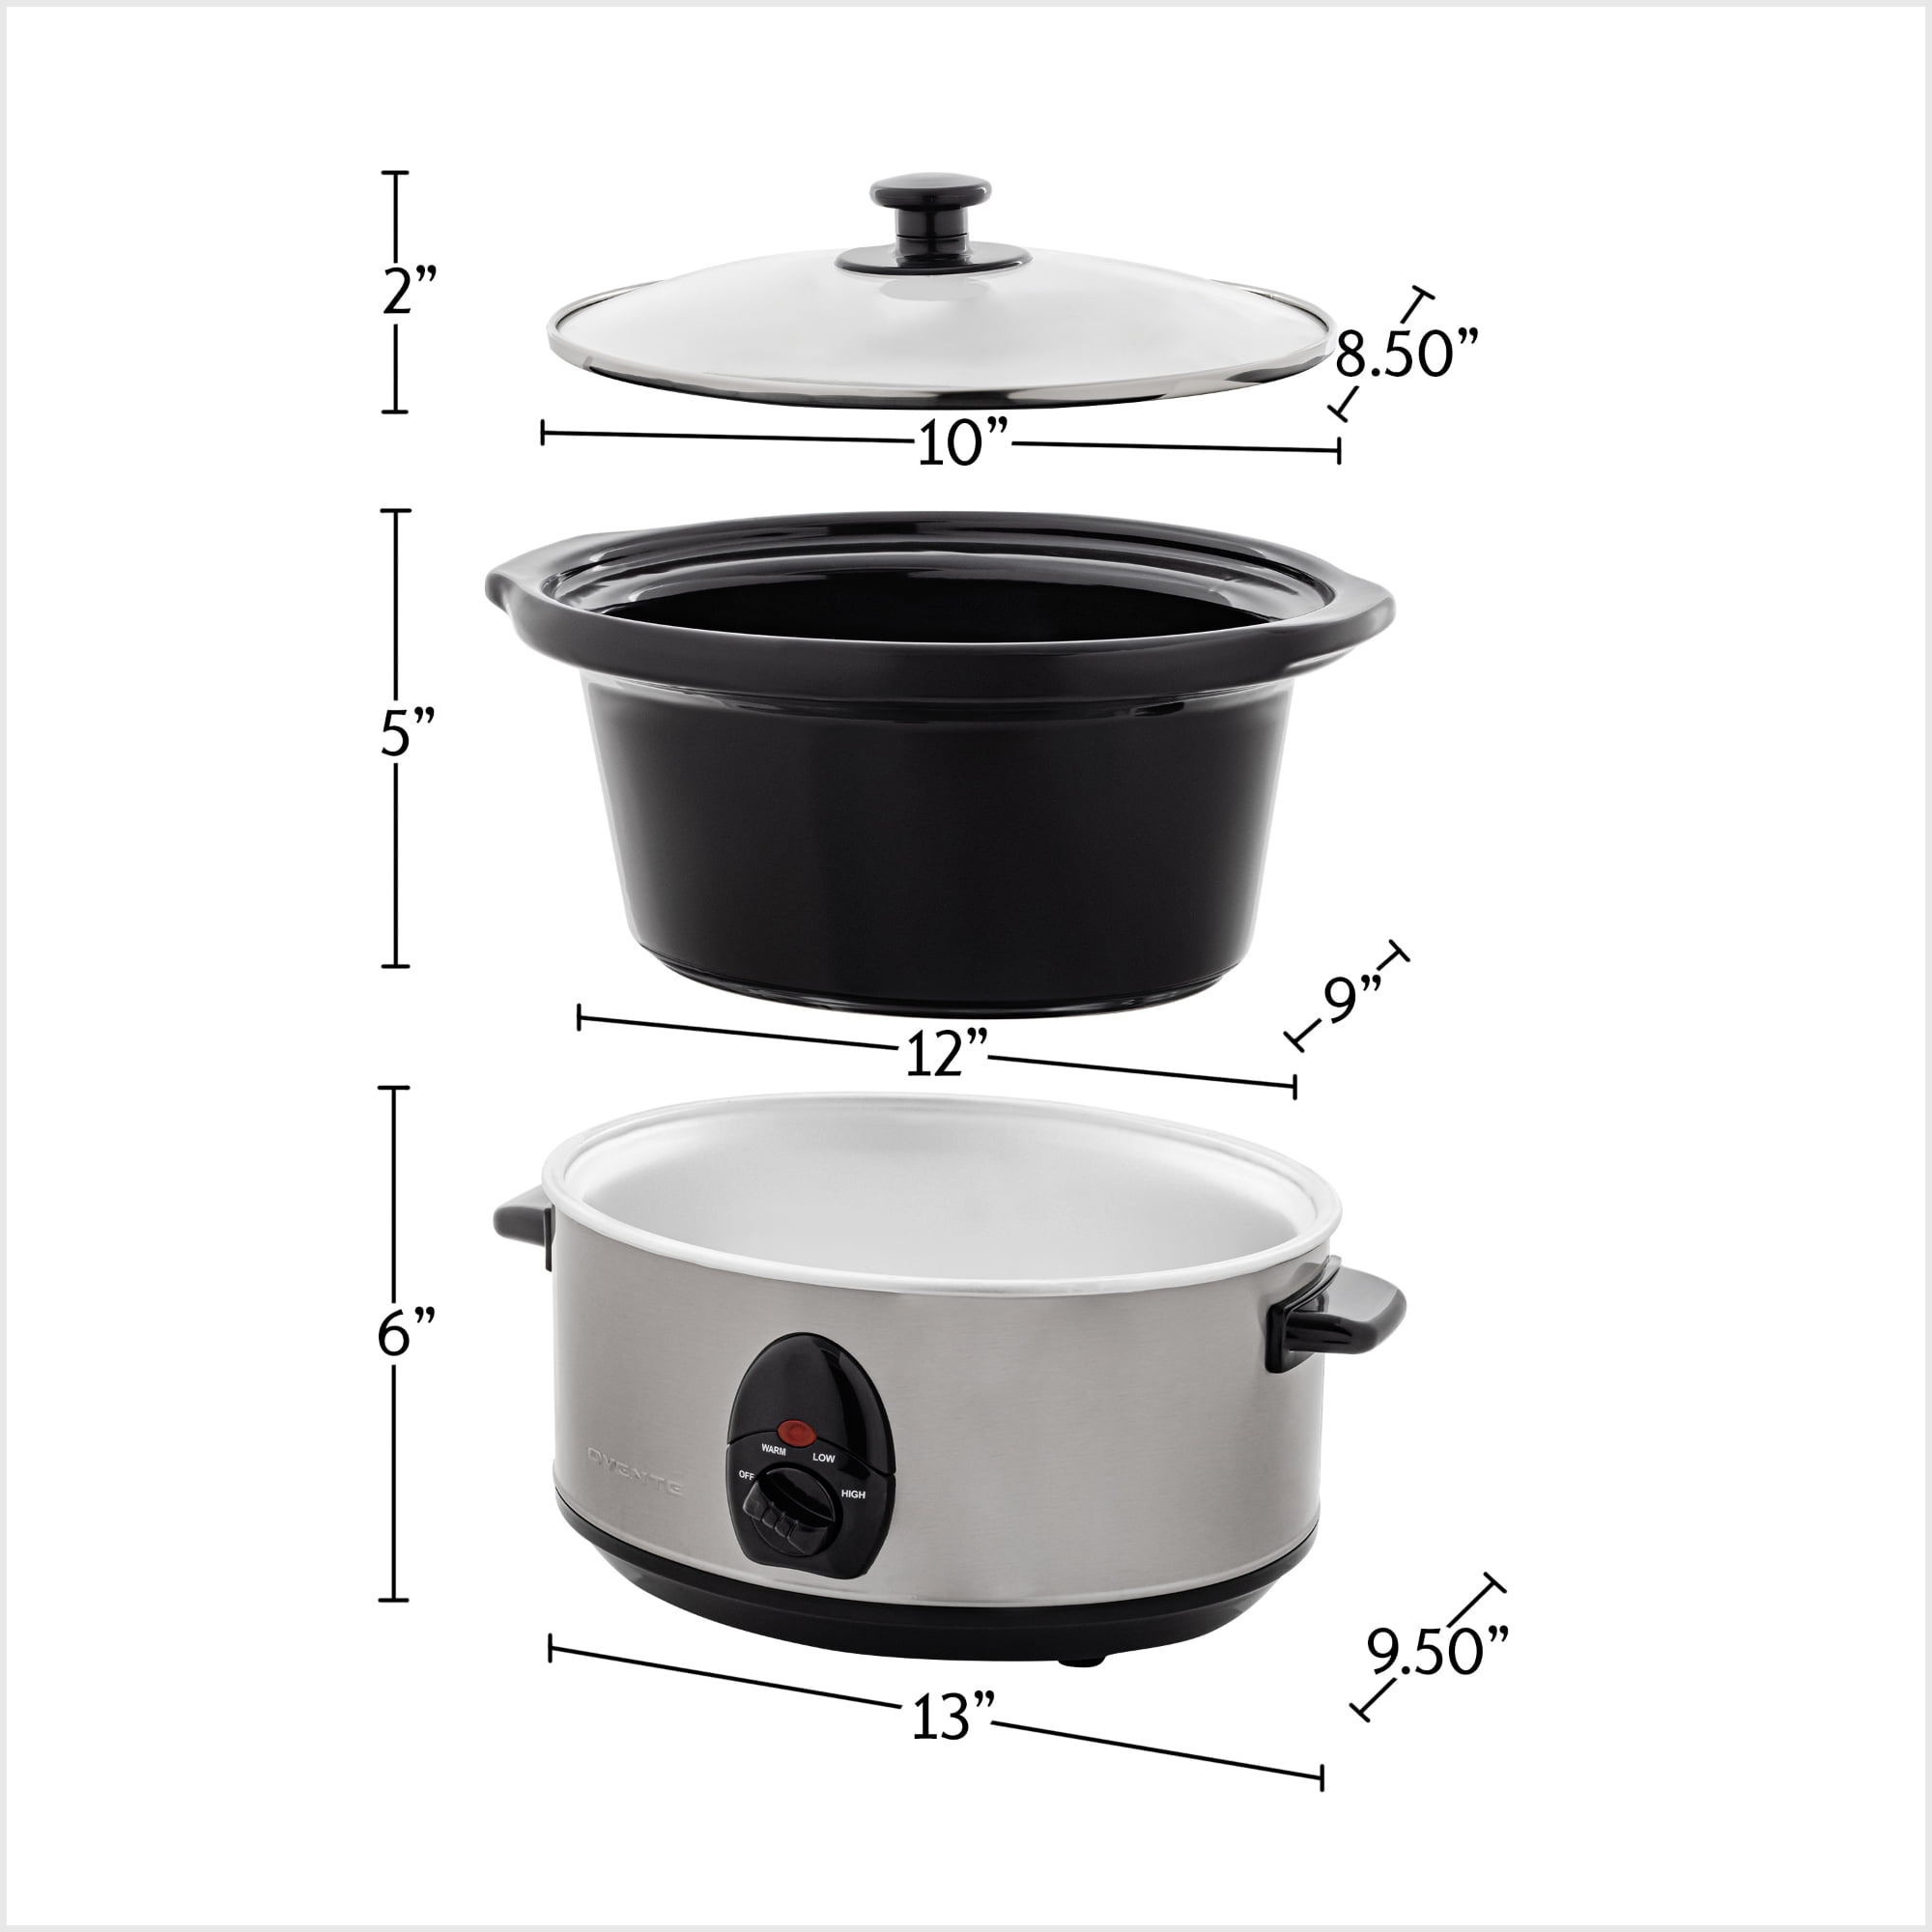 ICOOK Slow Cooker 3.5 Quart USC-351-OG,Dishwasher Safe Crock/Ceramic inner  pot and Glass lid,Small Slow Cooker,Oval Shape,White